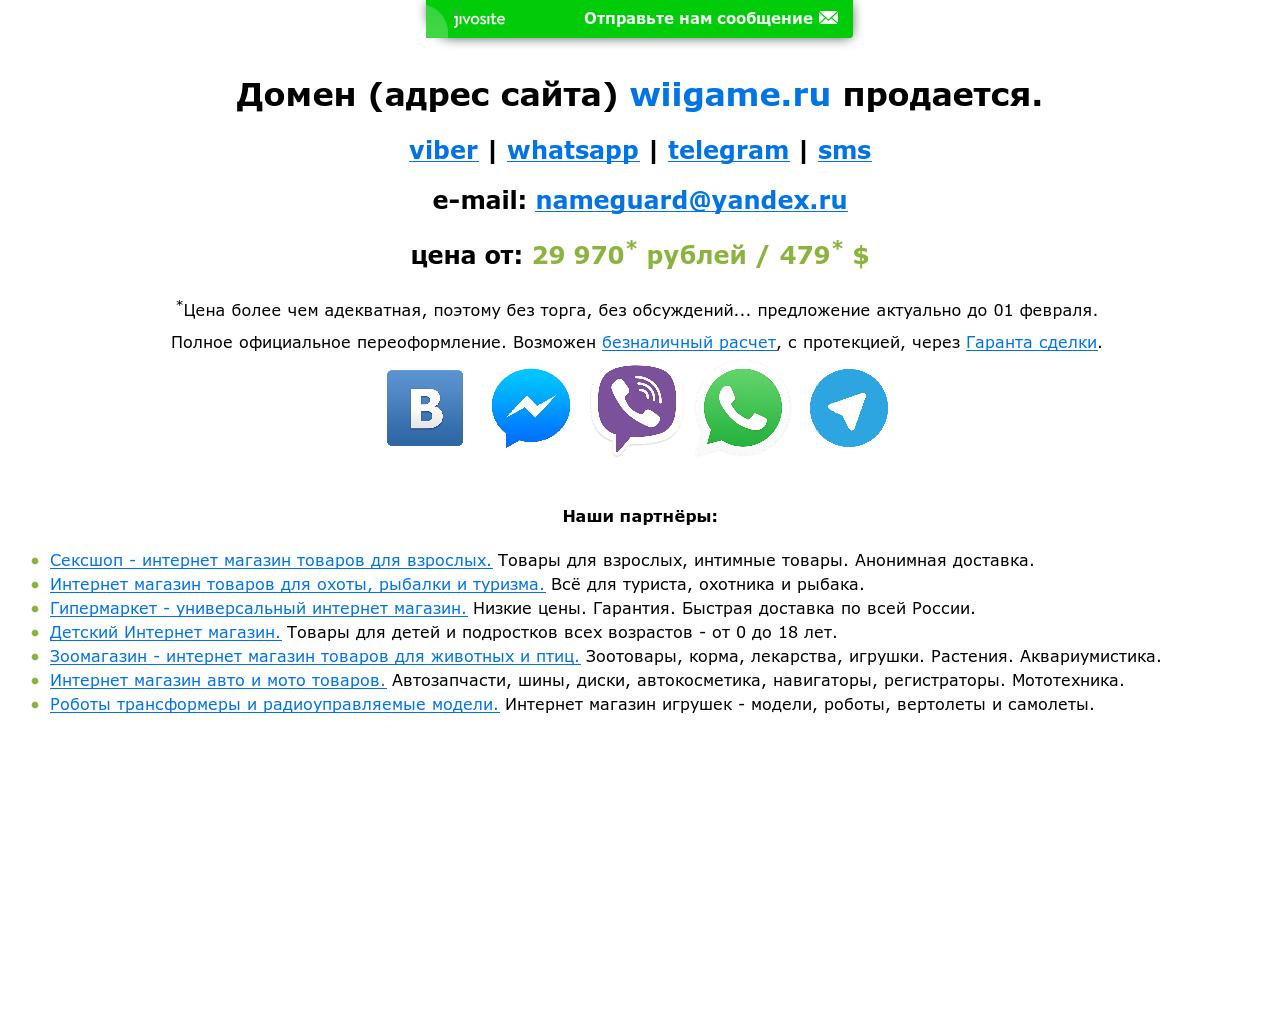 Изображение сайта wiigame.ru в разрешении 1280x1024